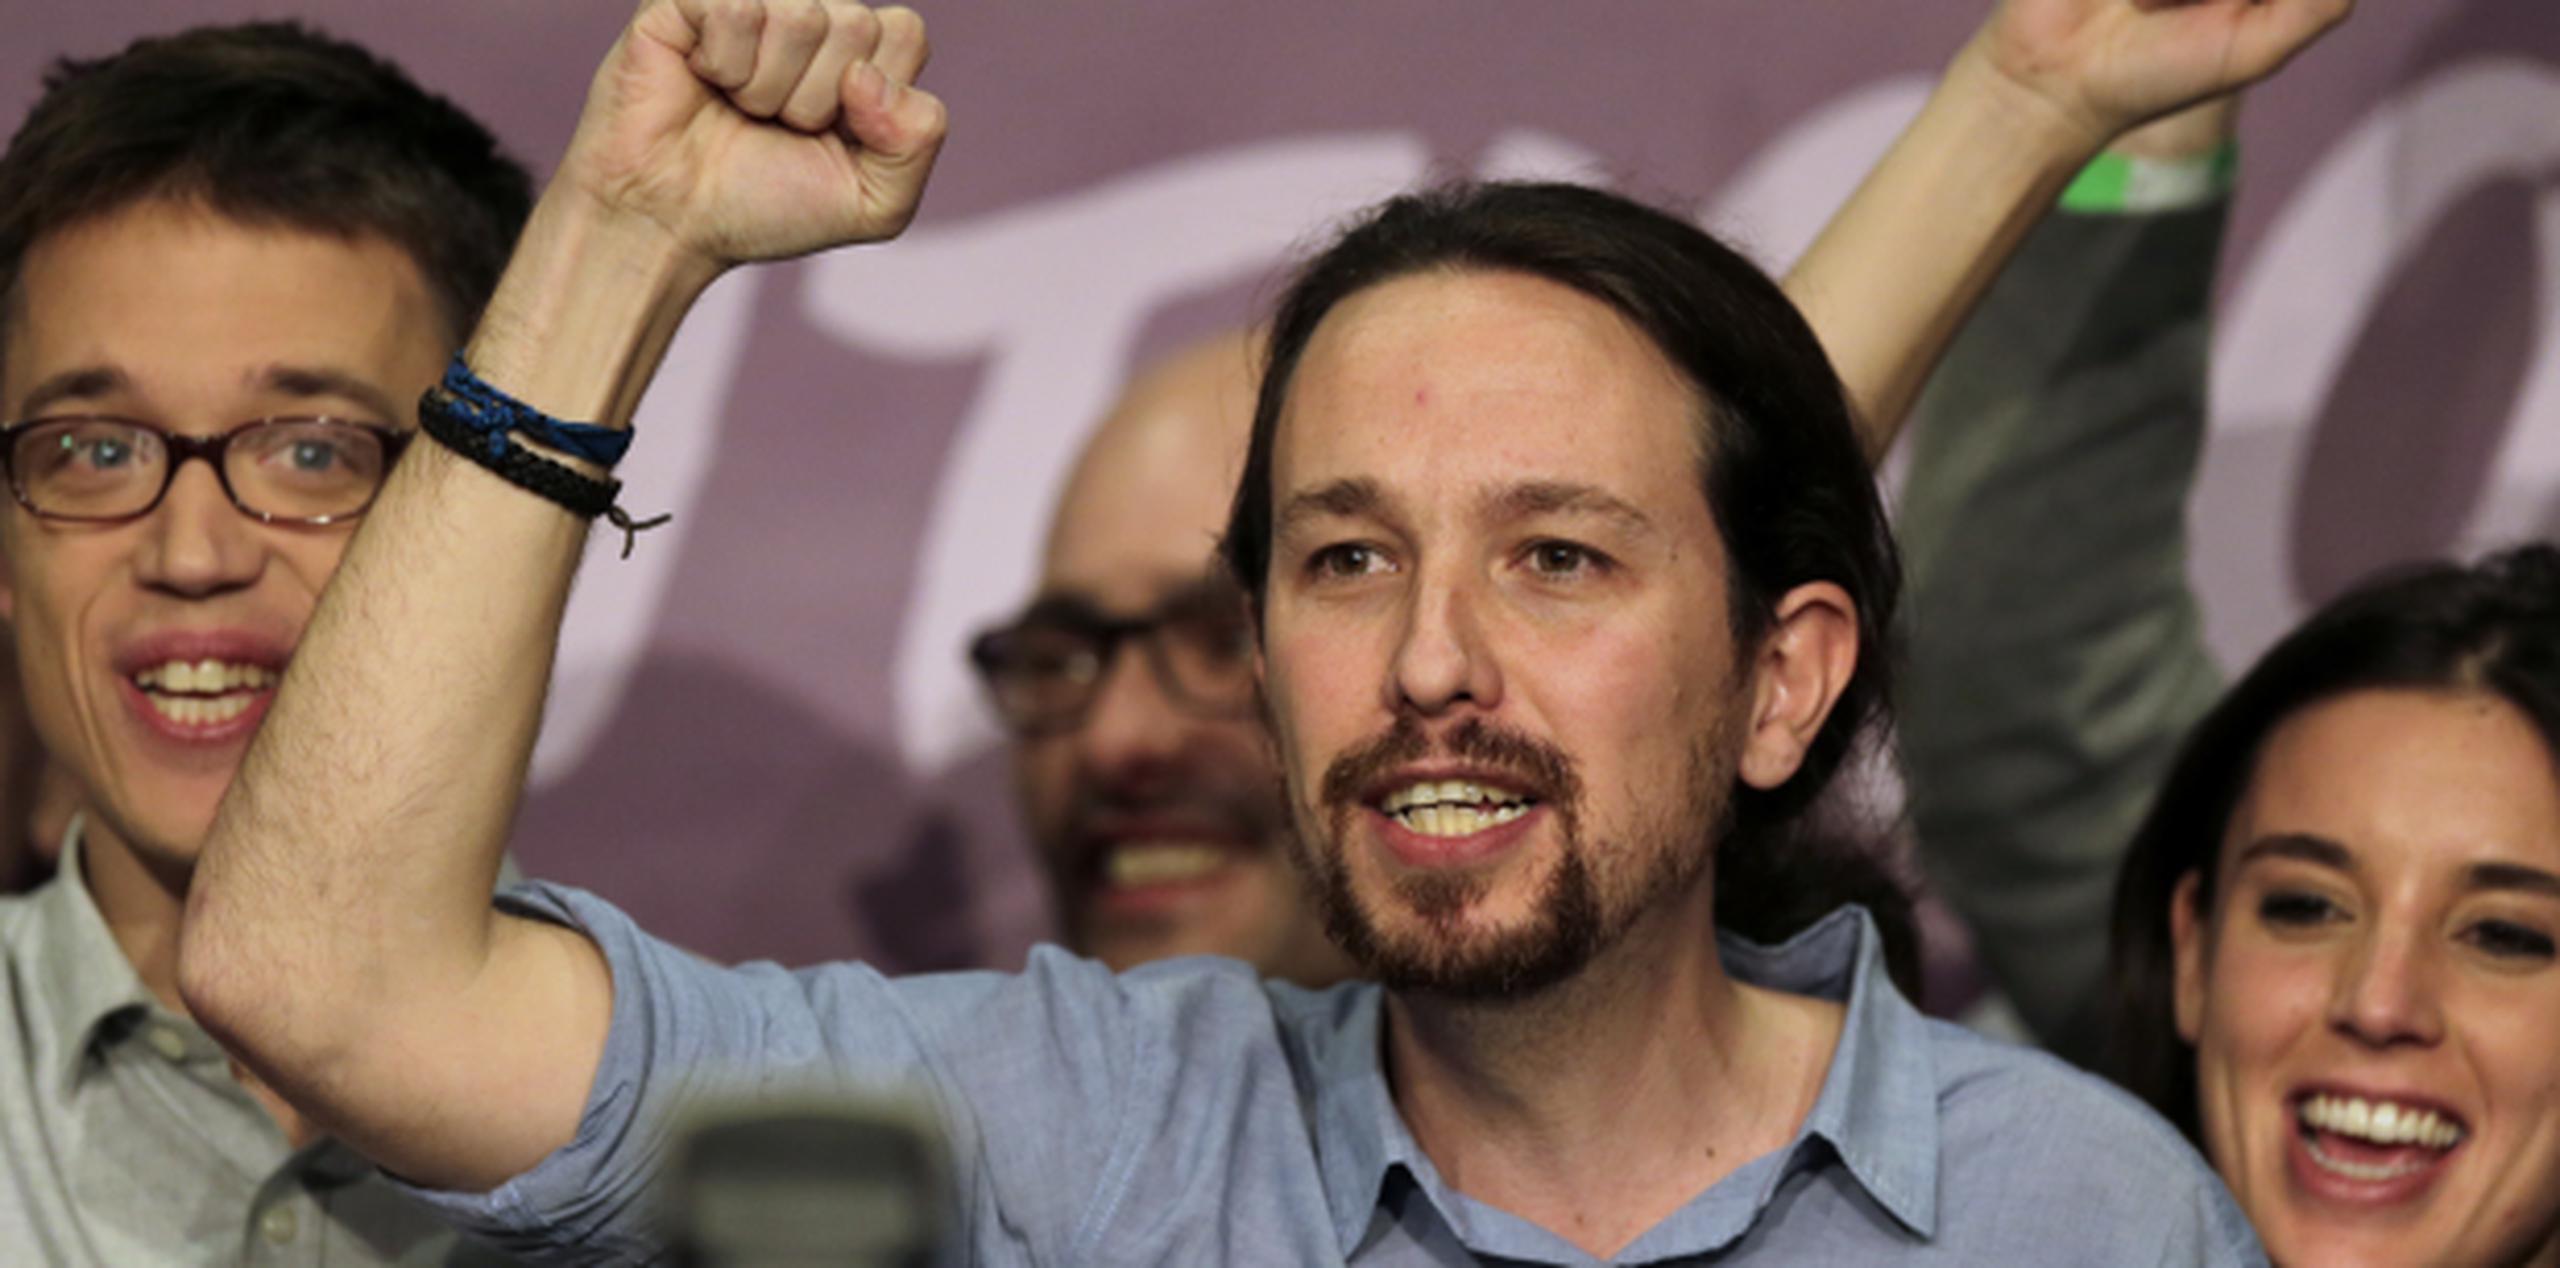 Pablo Iglesias, líder de Podemos, celebra que su organización se convirtiera en la tercera fuerza política de España, acabando con décadas de bipartidismo. (AP Photo/Emilio Morenatti)
